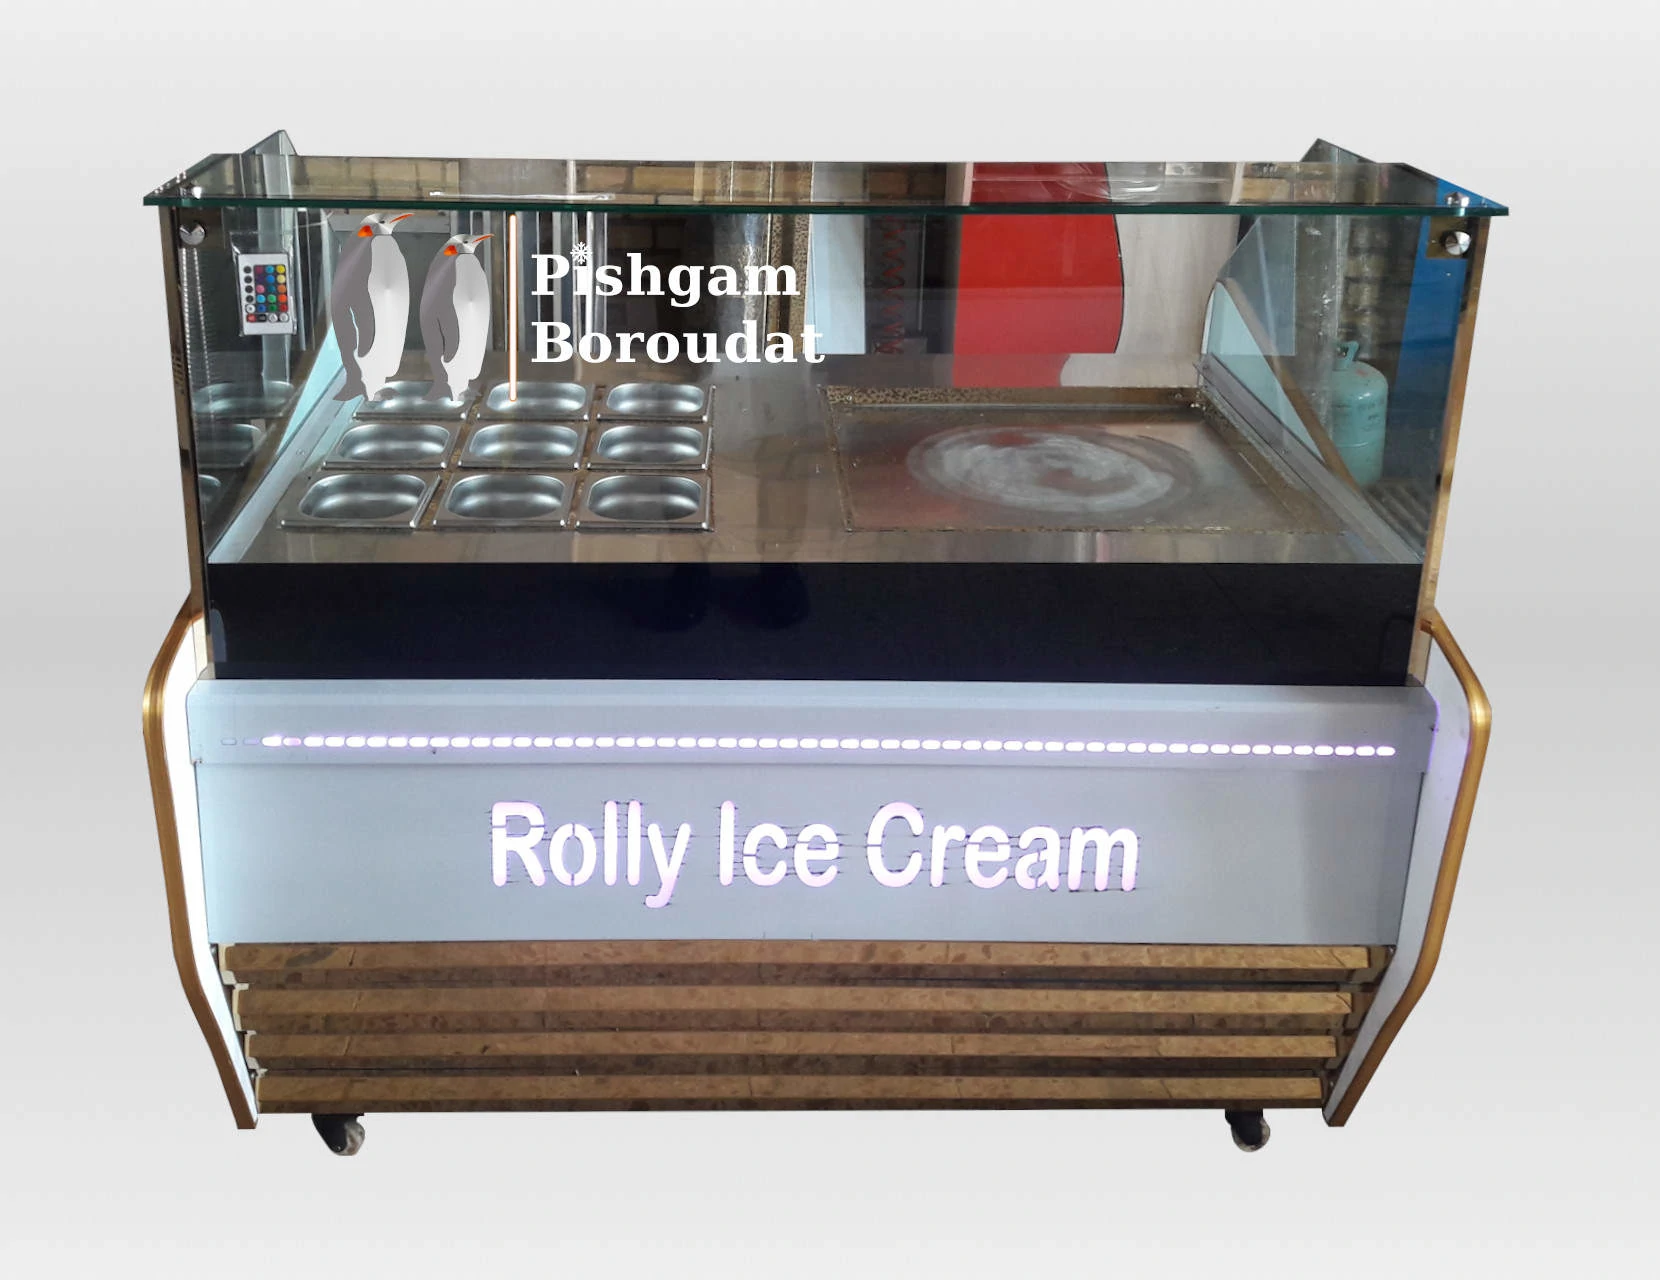 تاپینگ بستنی رولی